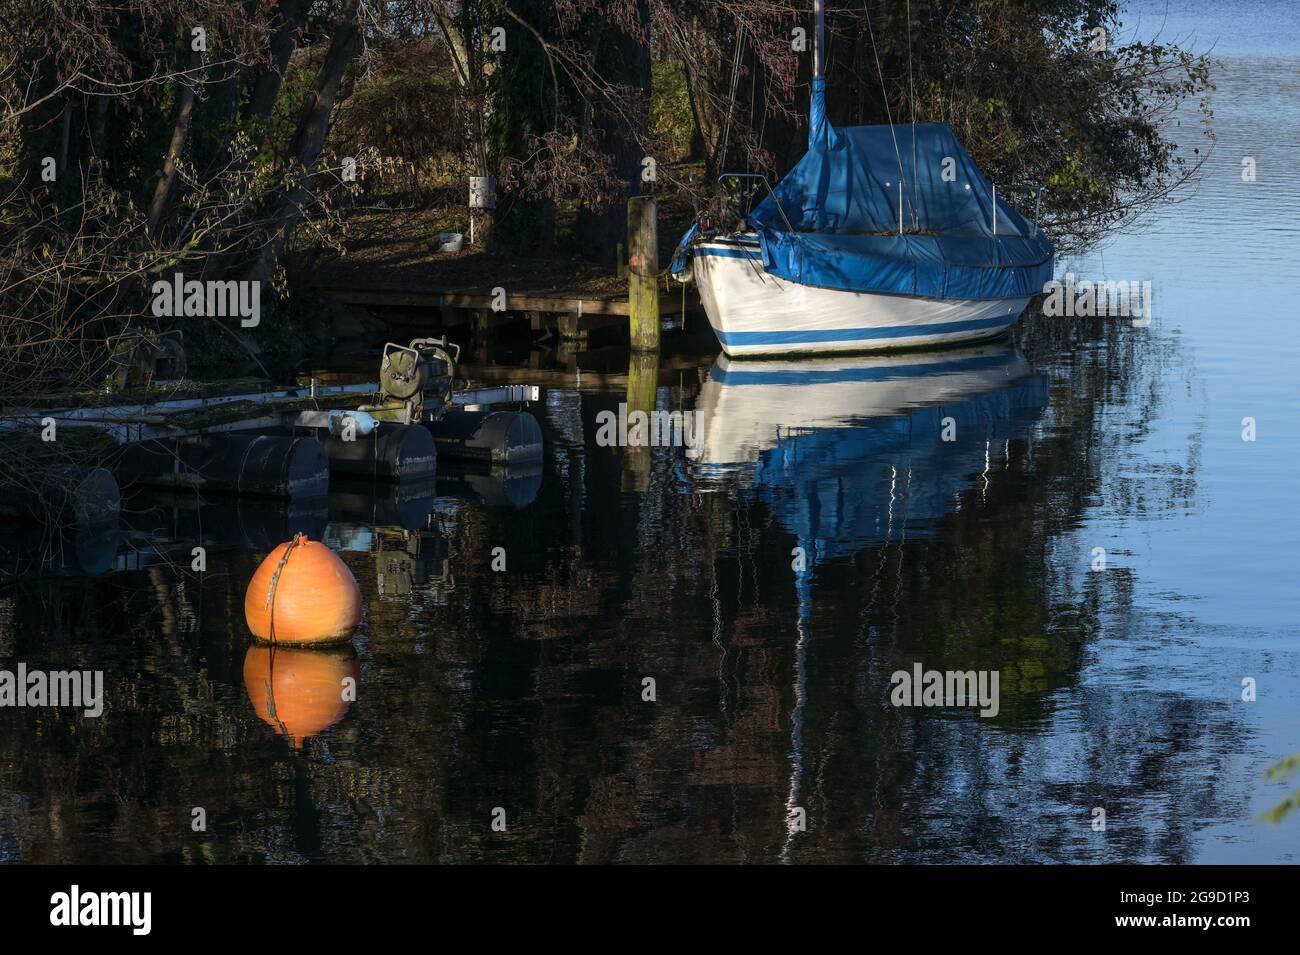 Bateau à voile couvert avec bâche bleue et une bouée orange dans le lac à la rive, concept d'activité de loisirs, espace de copie, foyer sélectionné, profondeur étroite Banque D'Images